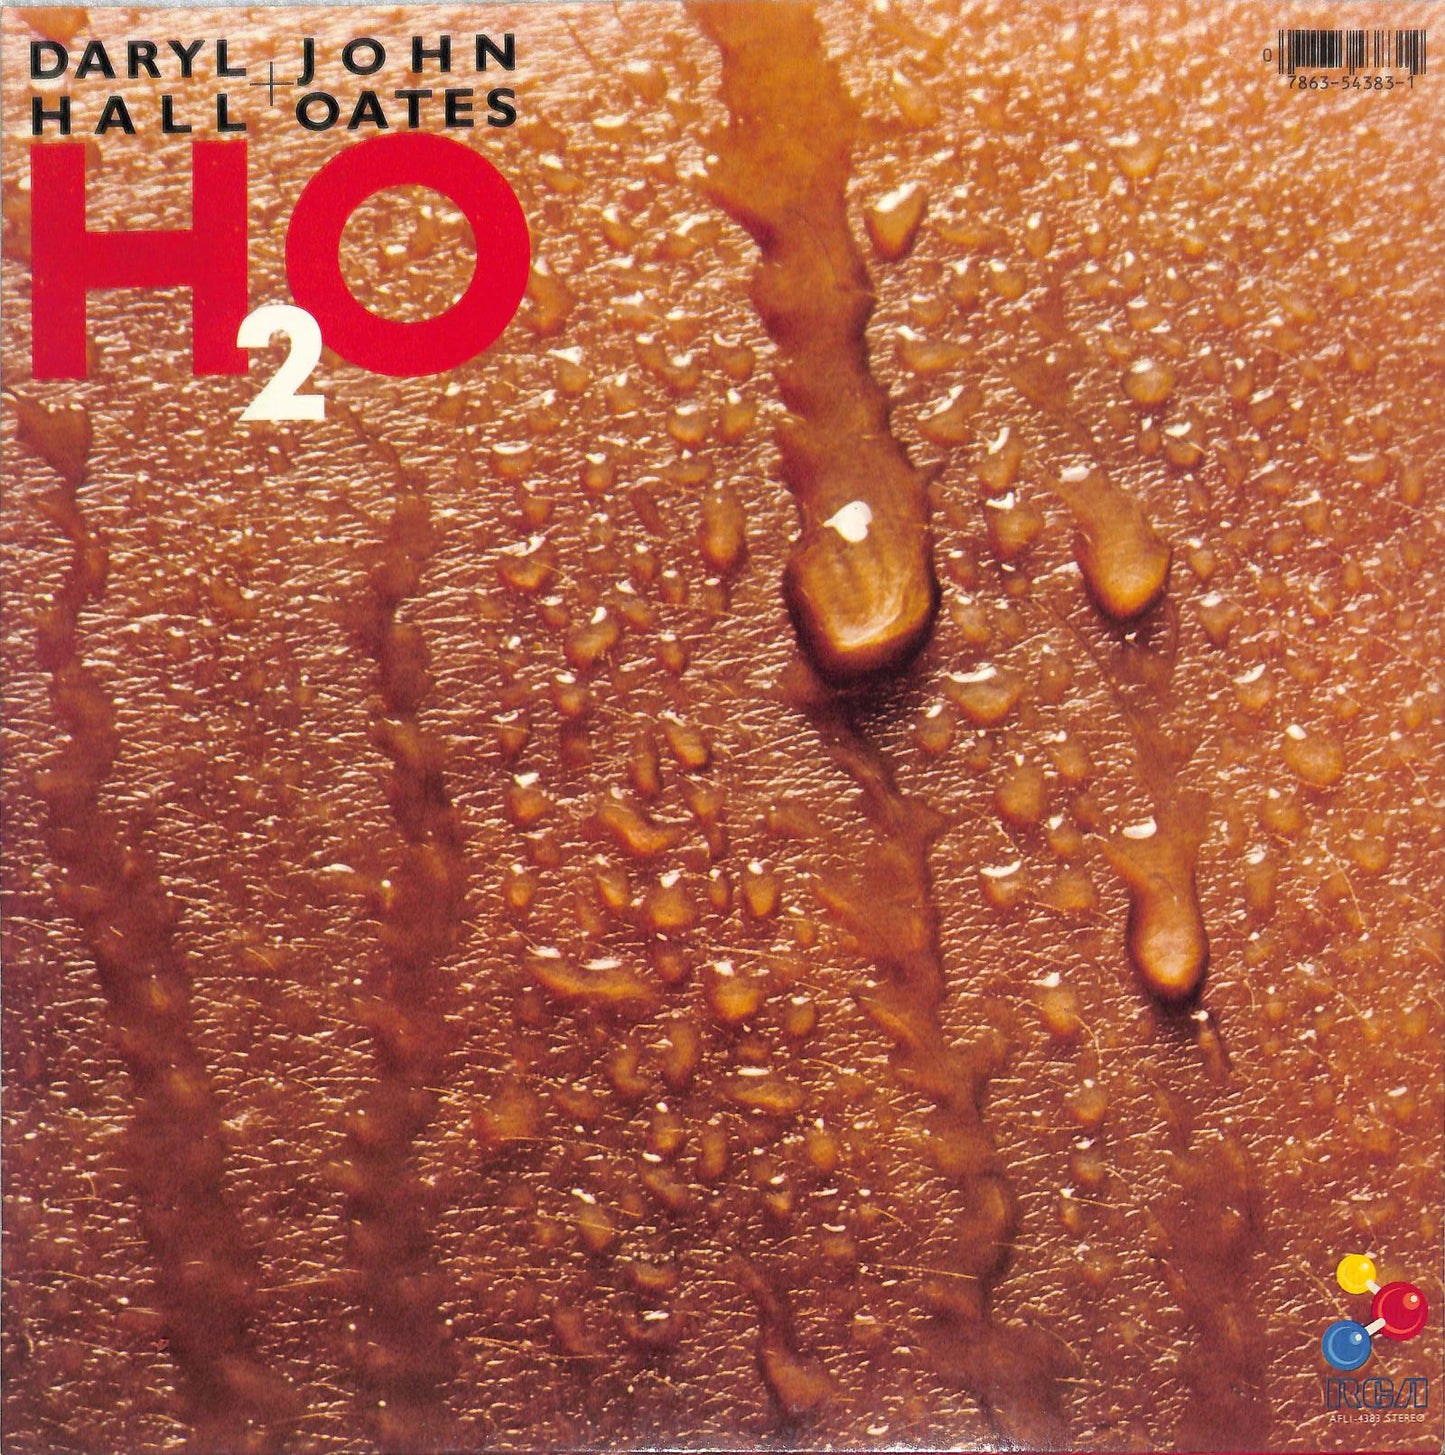 DARYL HALL + JOHN OATES - H₂O